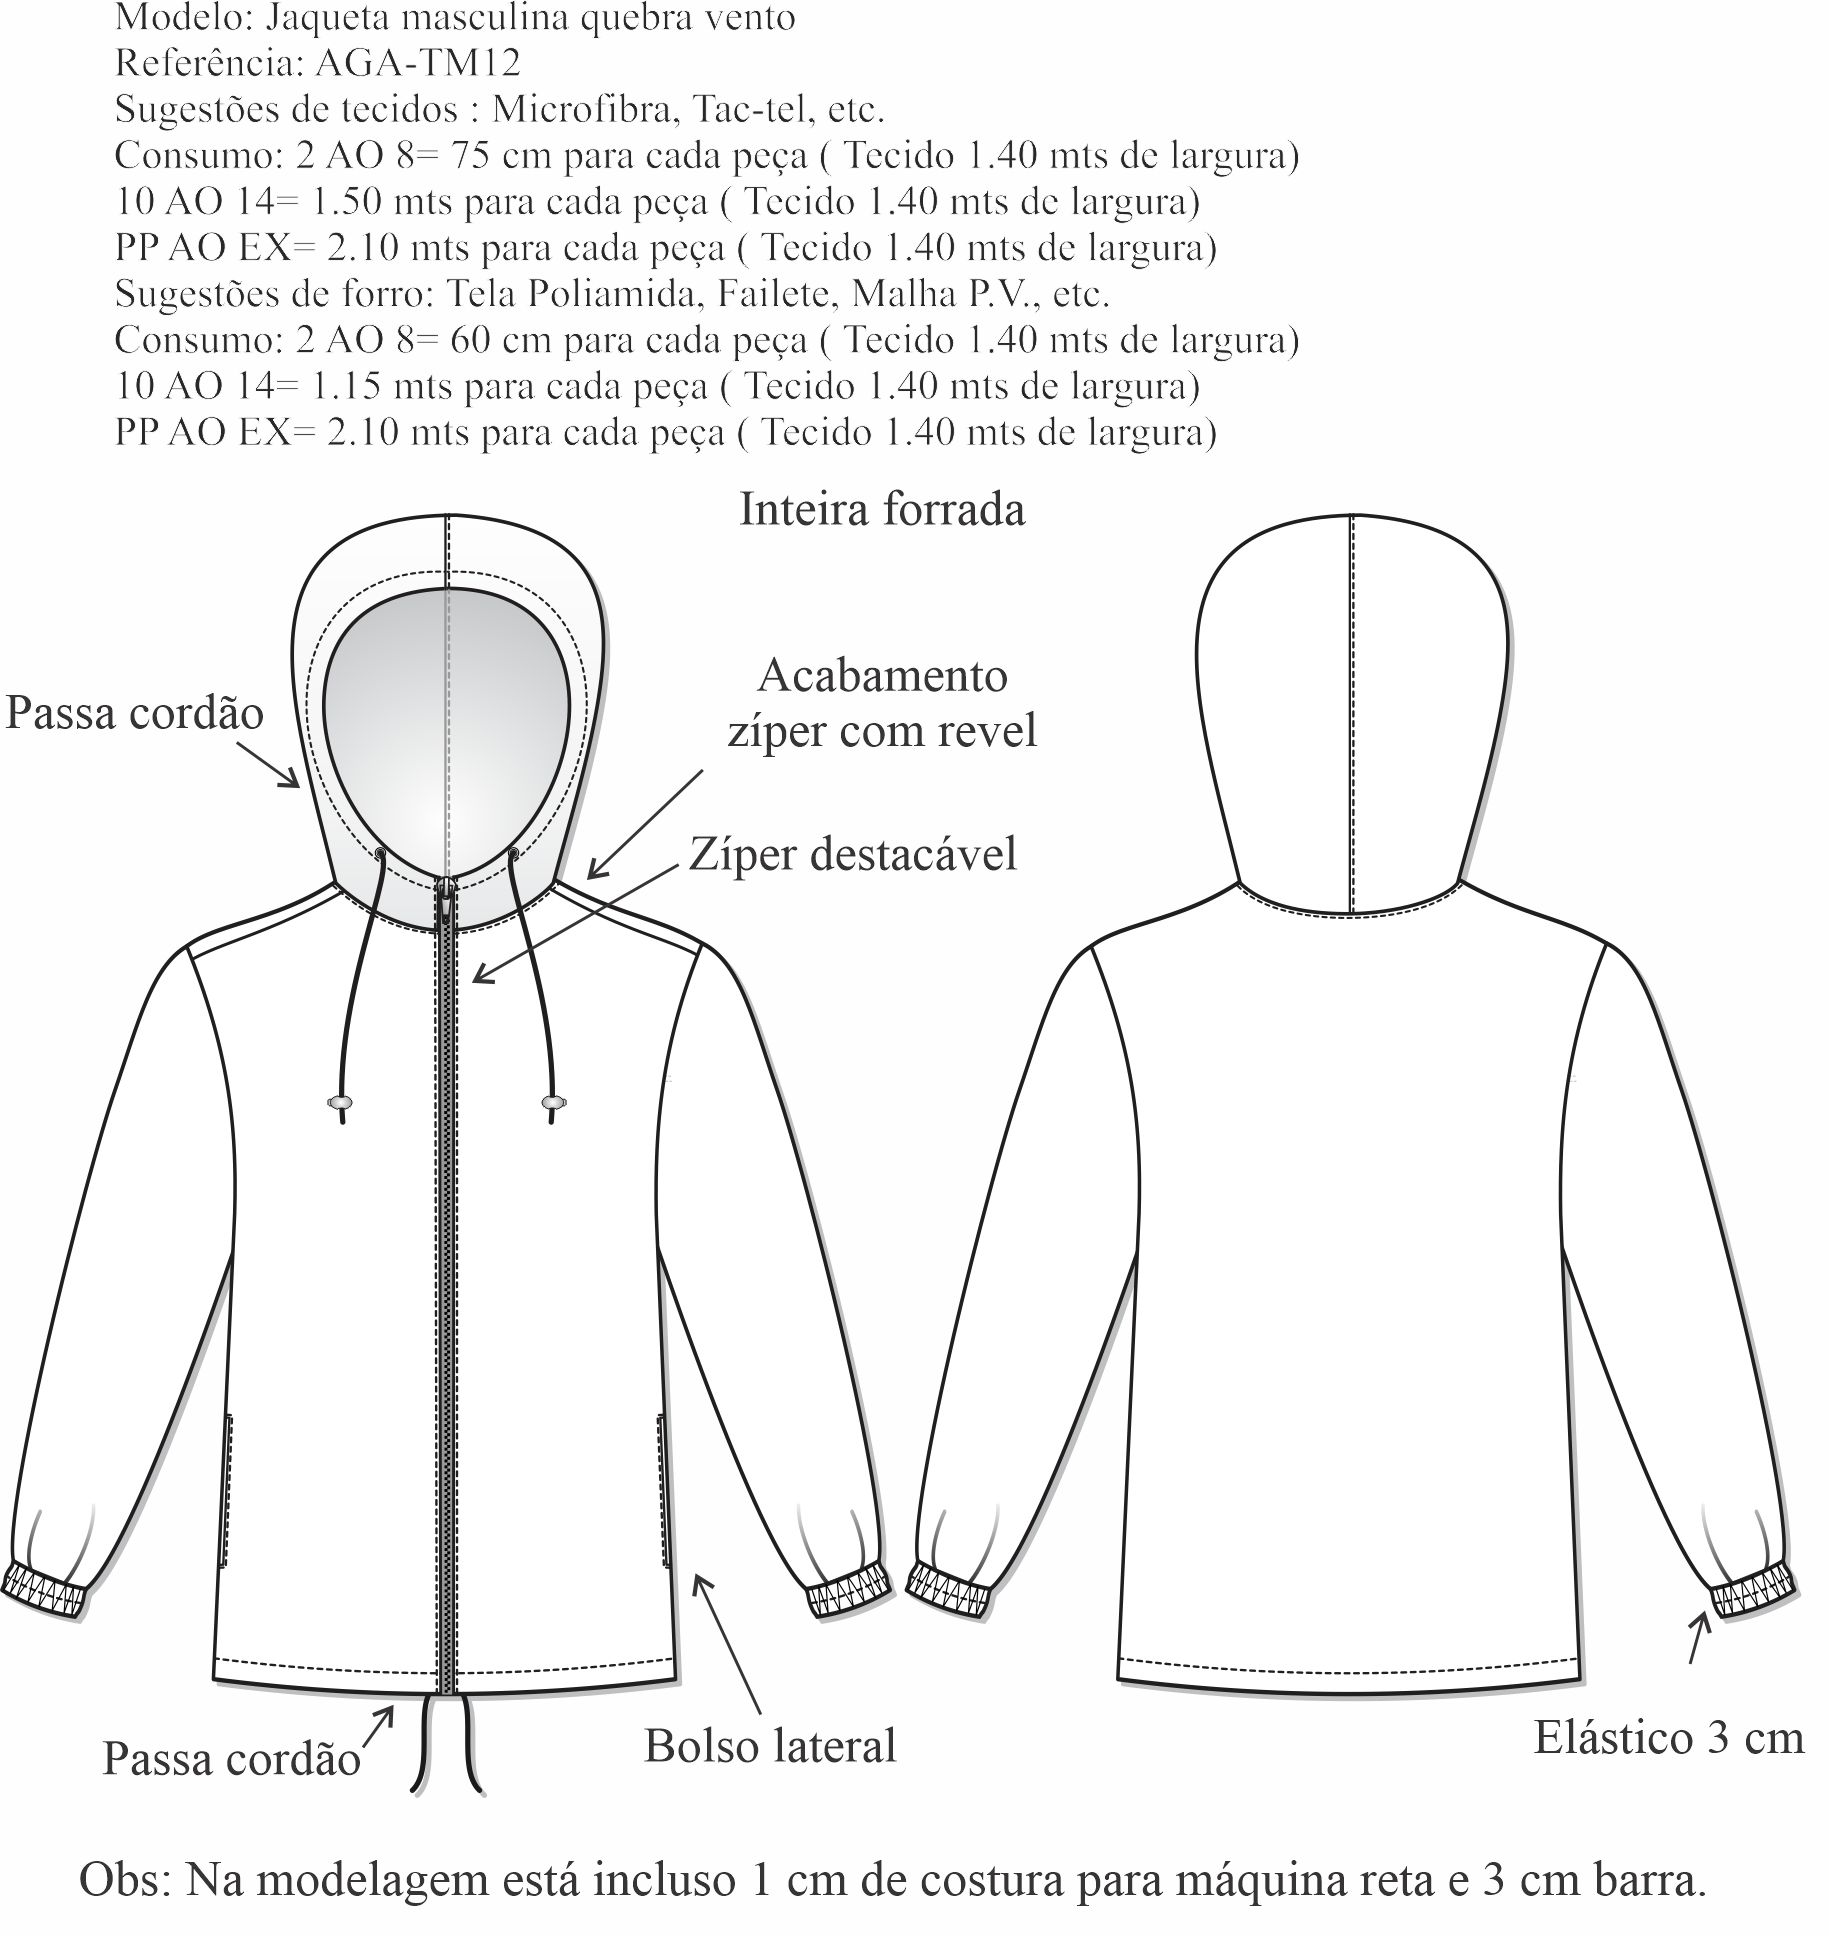 Jaqueta masculina quebra vento (AGA-TM12) - Foto 1